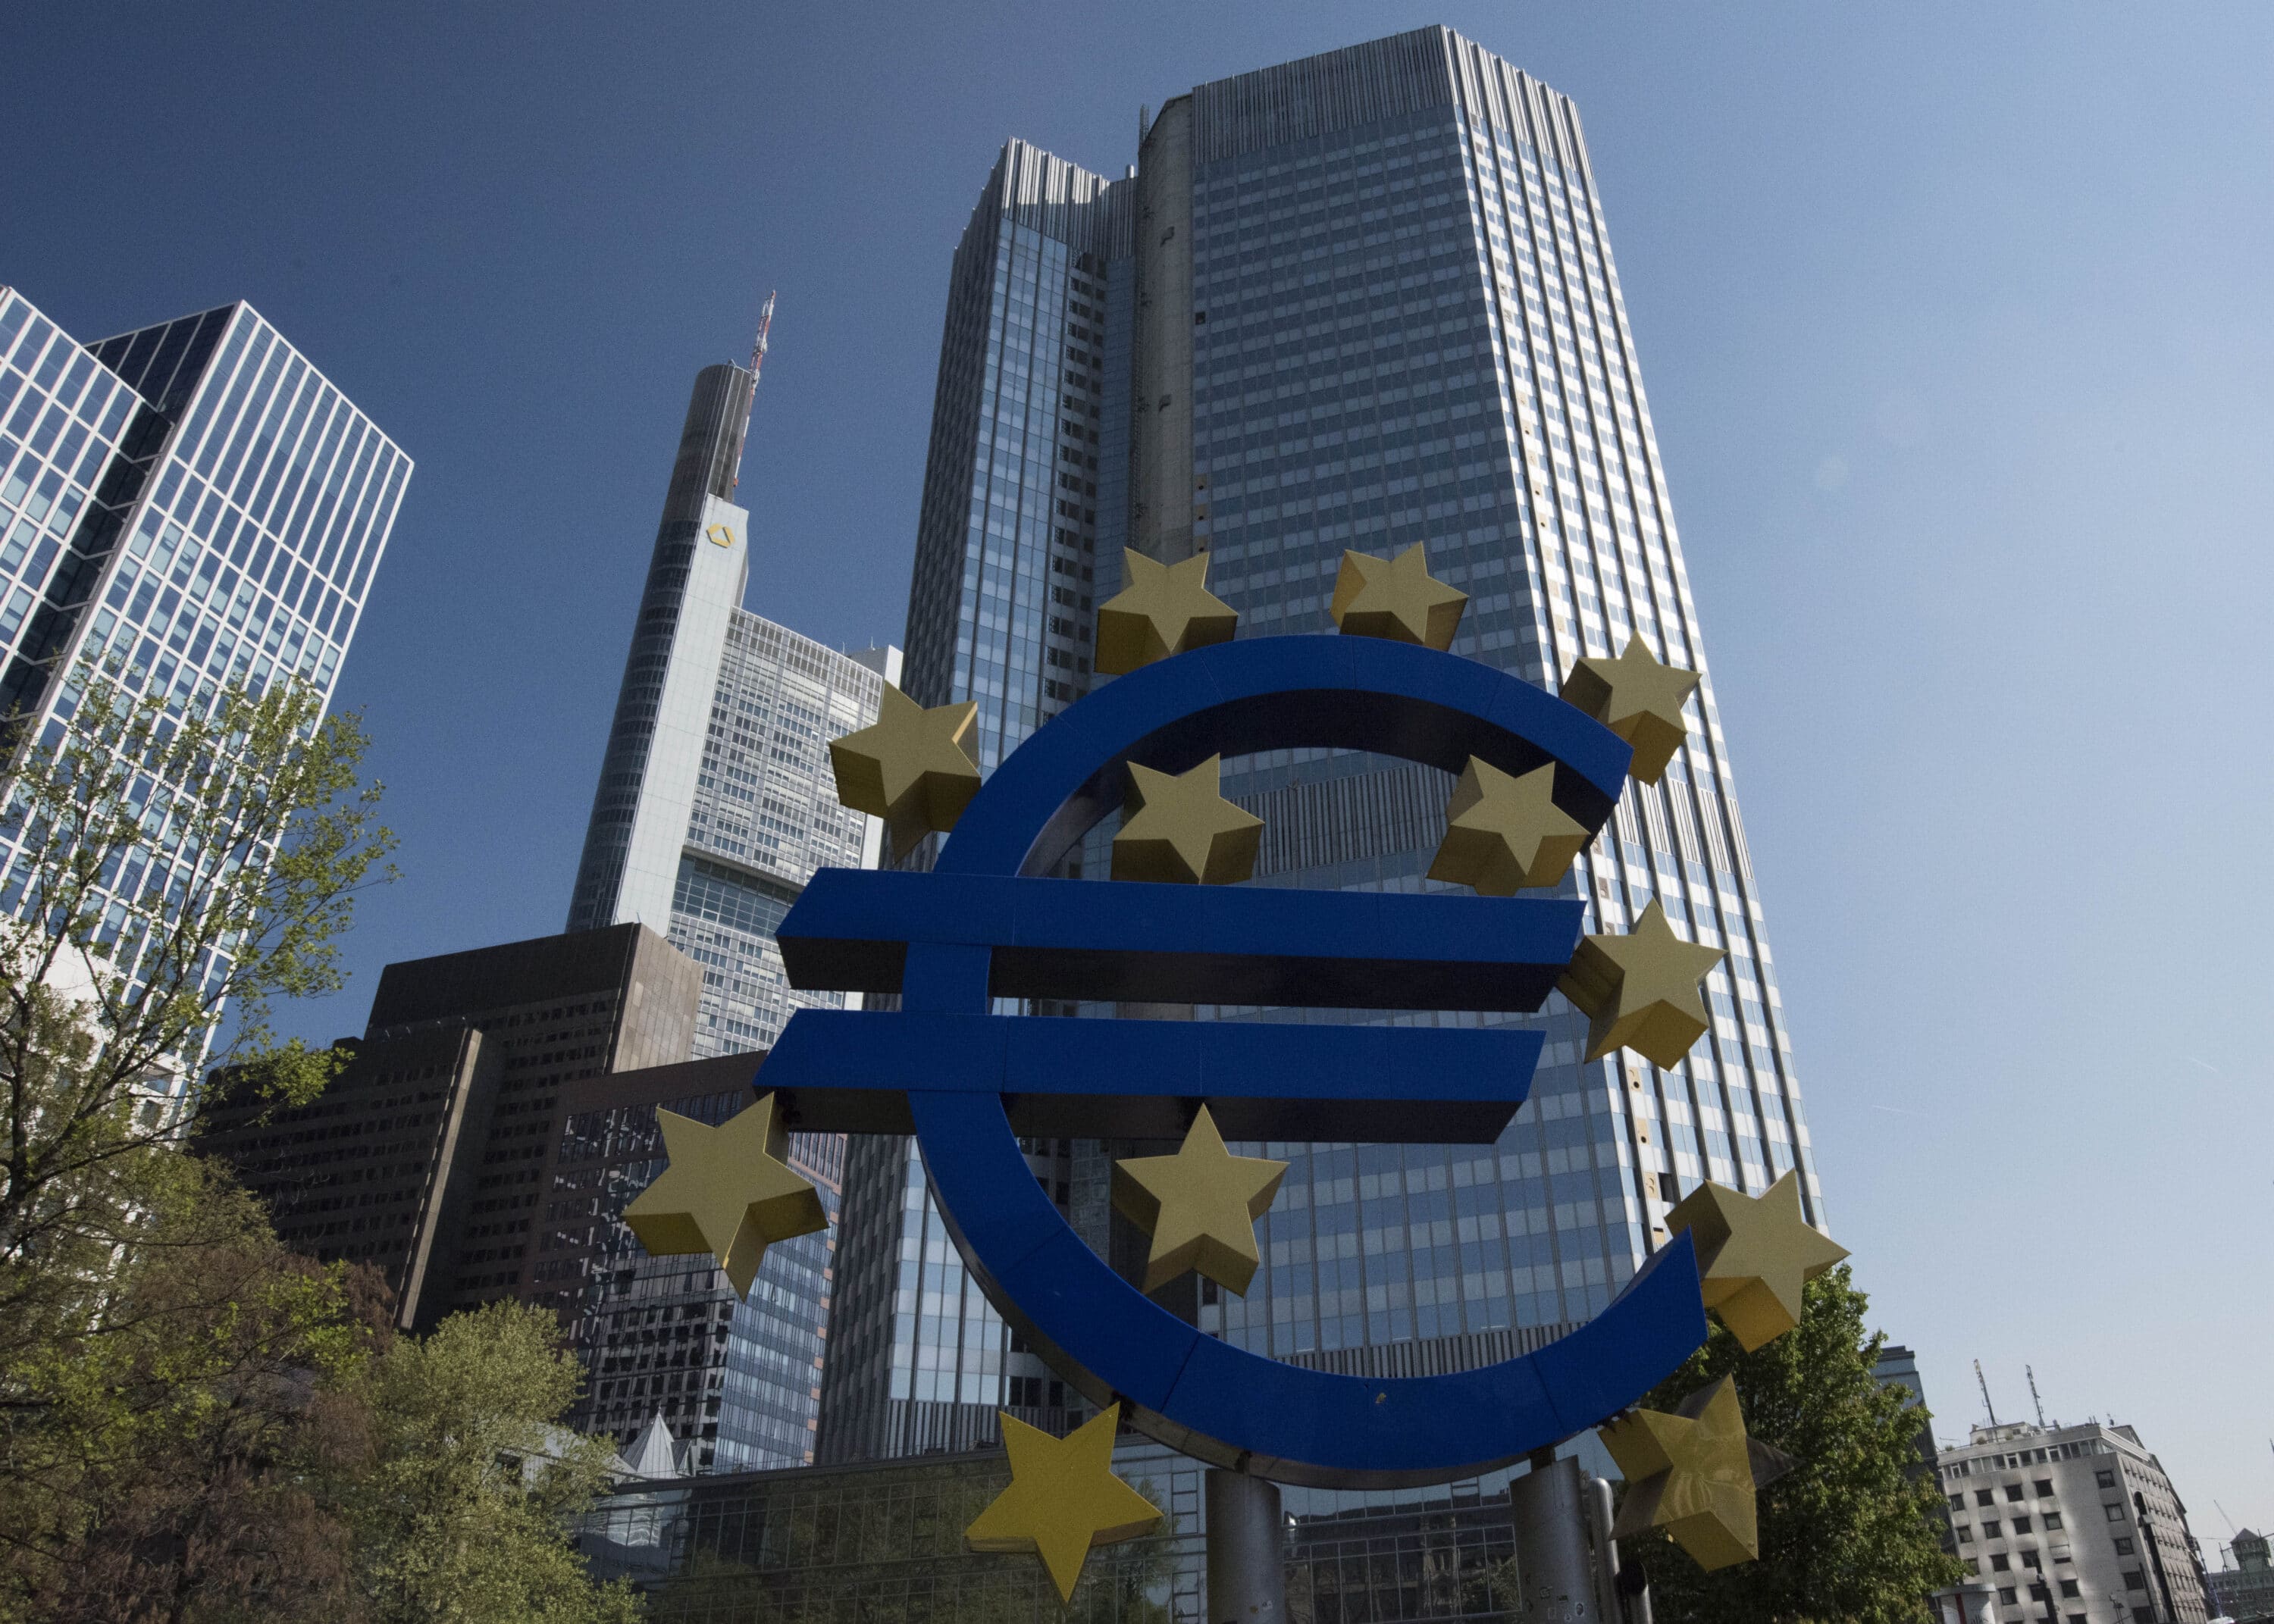 La Bce non aspetta più: primo taglio dei tassi a giugno, ma poi subito lo stop a luglio